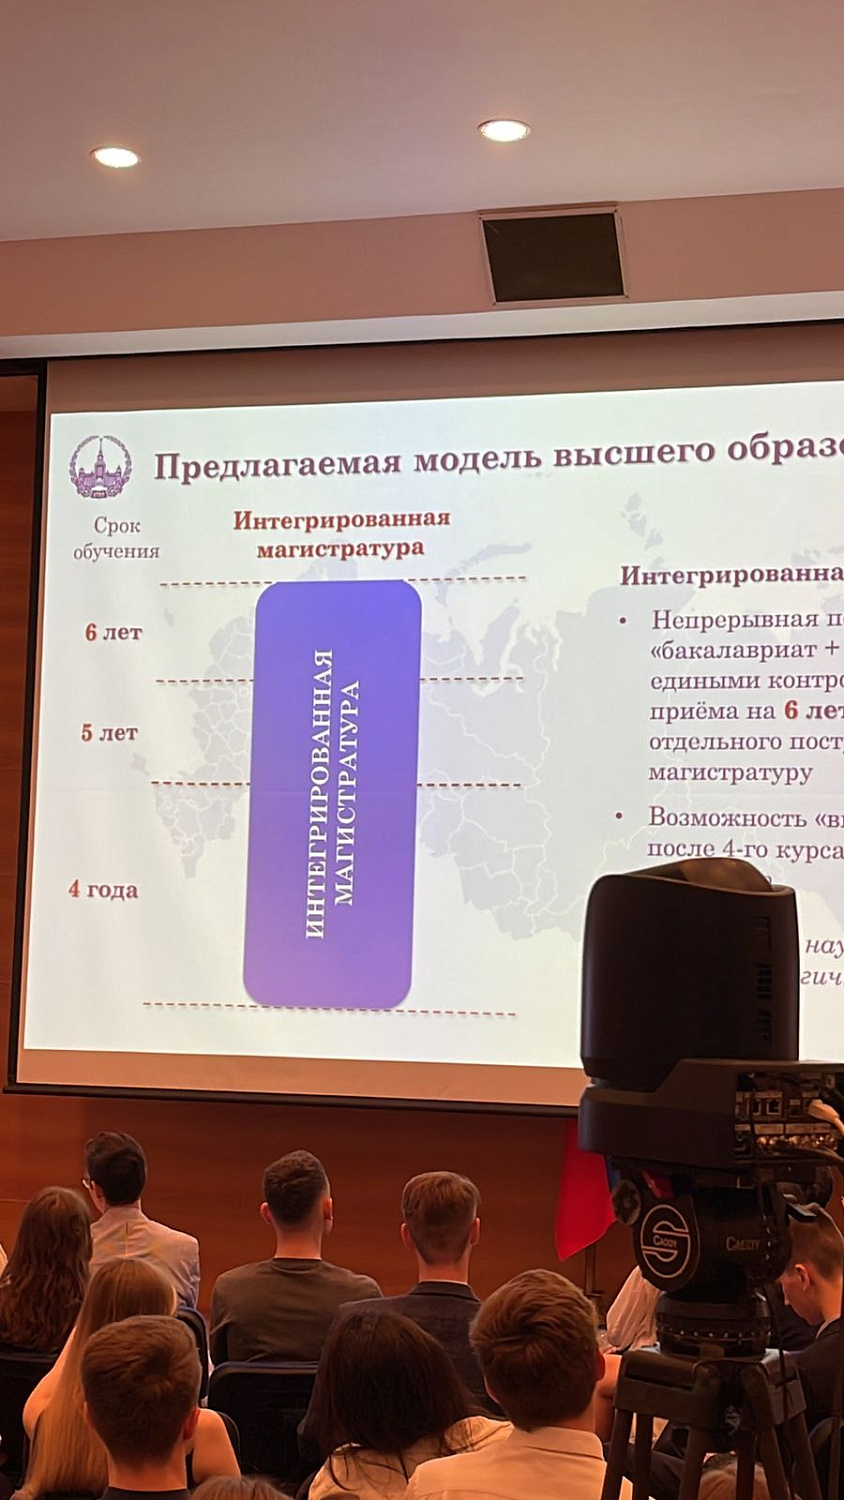 Развитие системы высшего образования в России